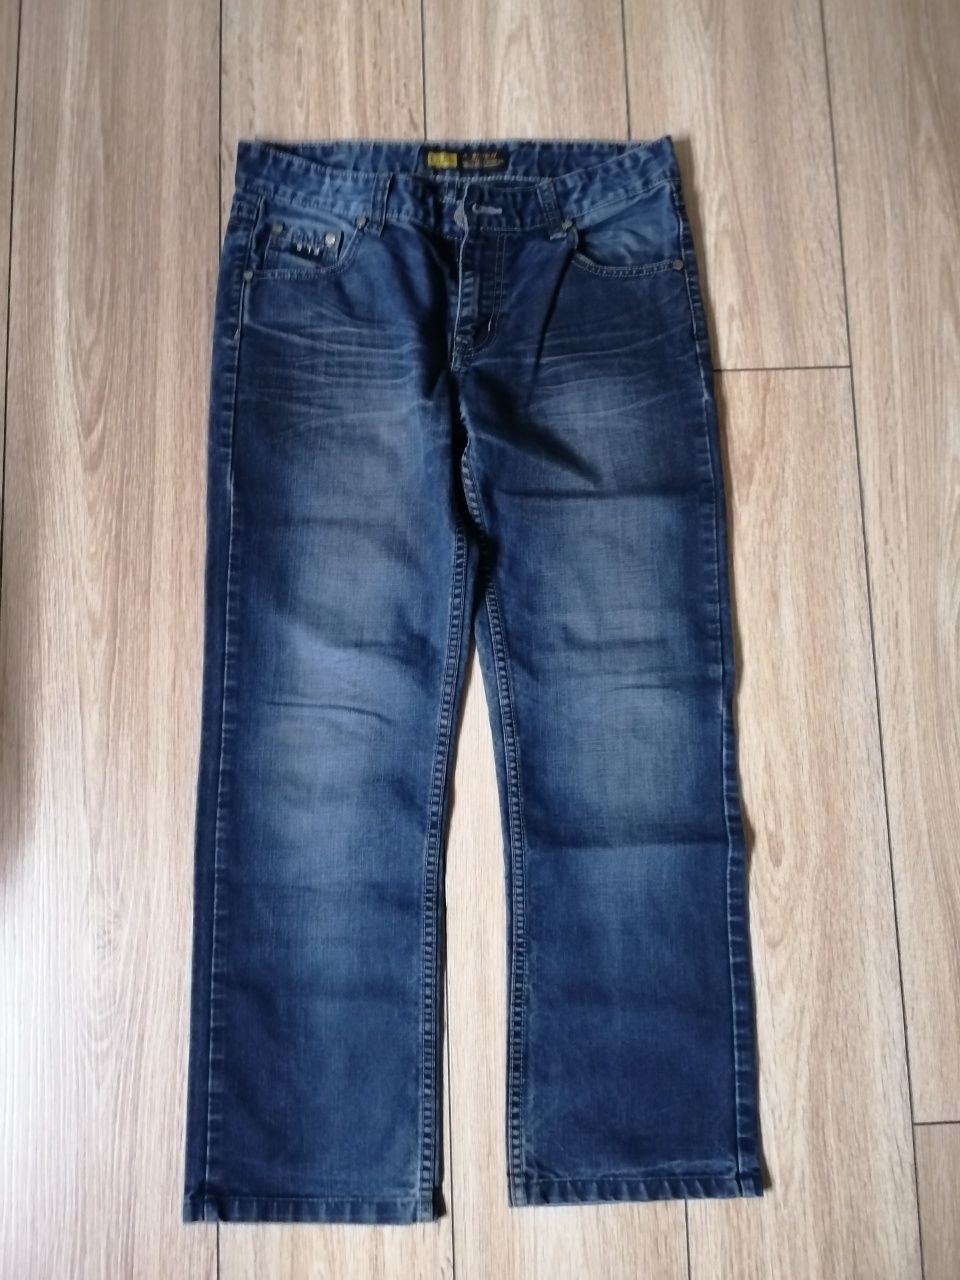 Spodnie chłopięce jeansy rozm 30 Files 100 % bawełna